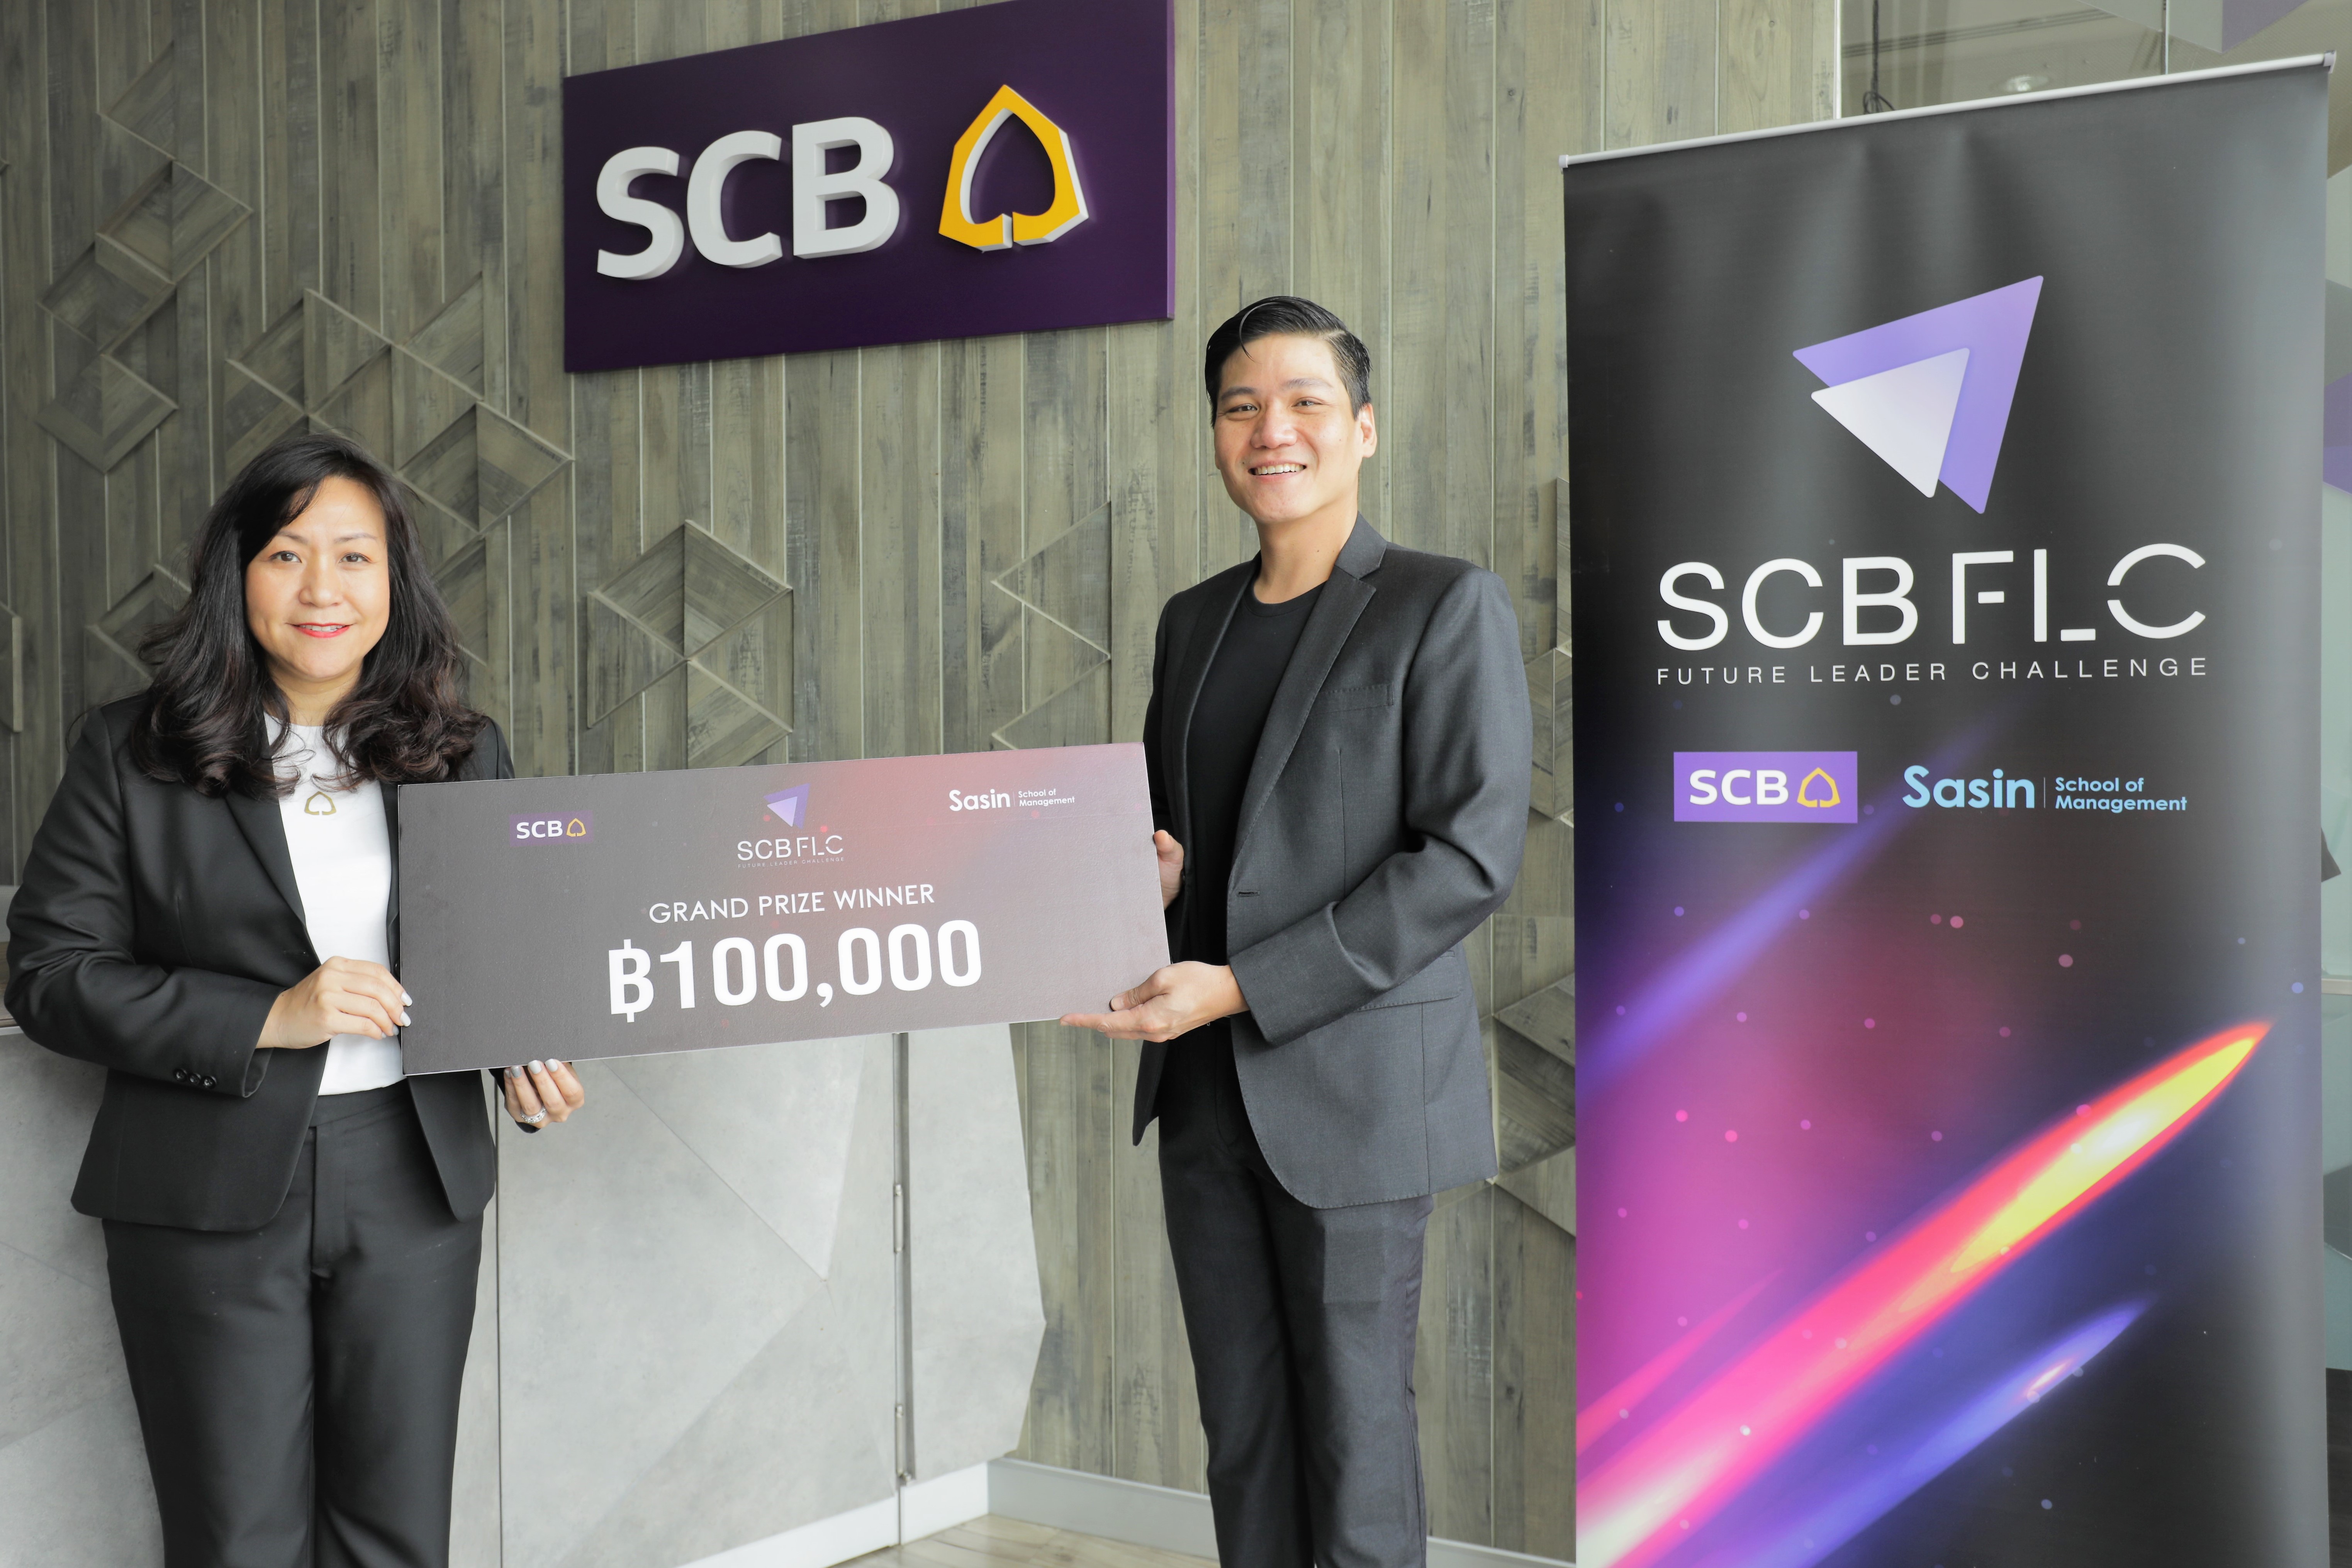 ธนาคารไทยพาณิชย์ ร่วมกับ ศศินทร์ฯ ประกาศผลผู้ชนะรางวัลพระราชทาน จากการแข่งขัน SCB Future Leader Challenge 2020